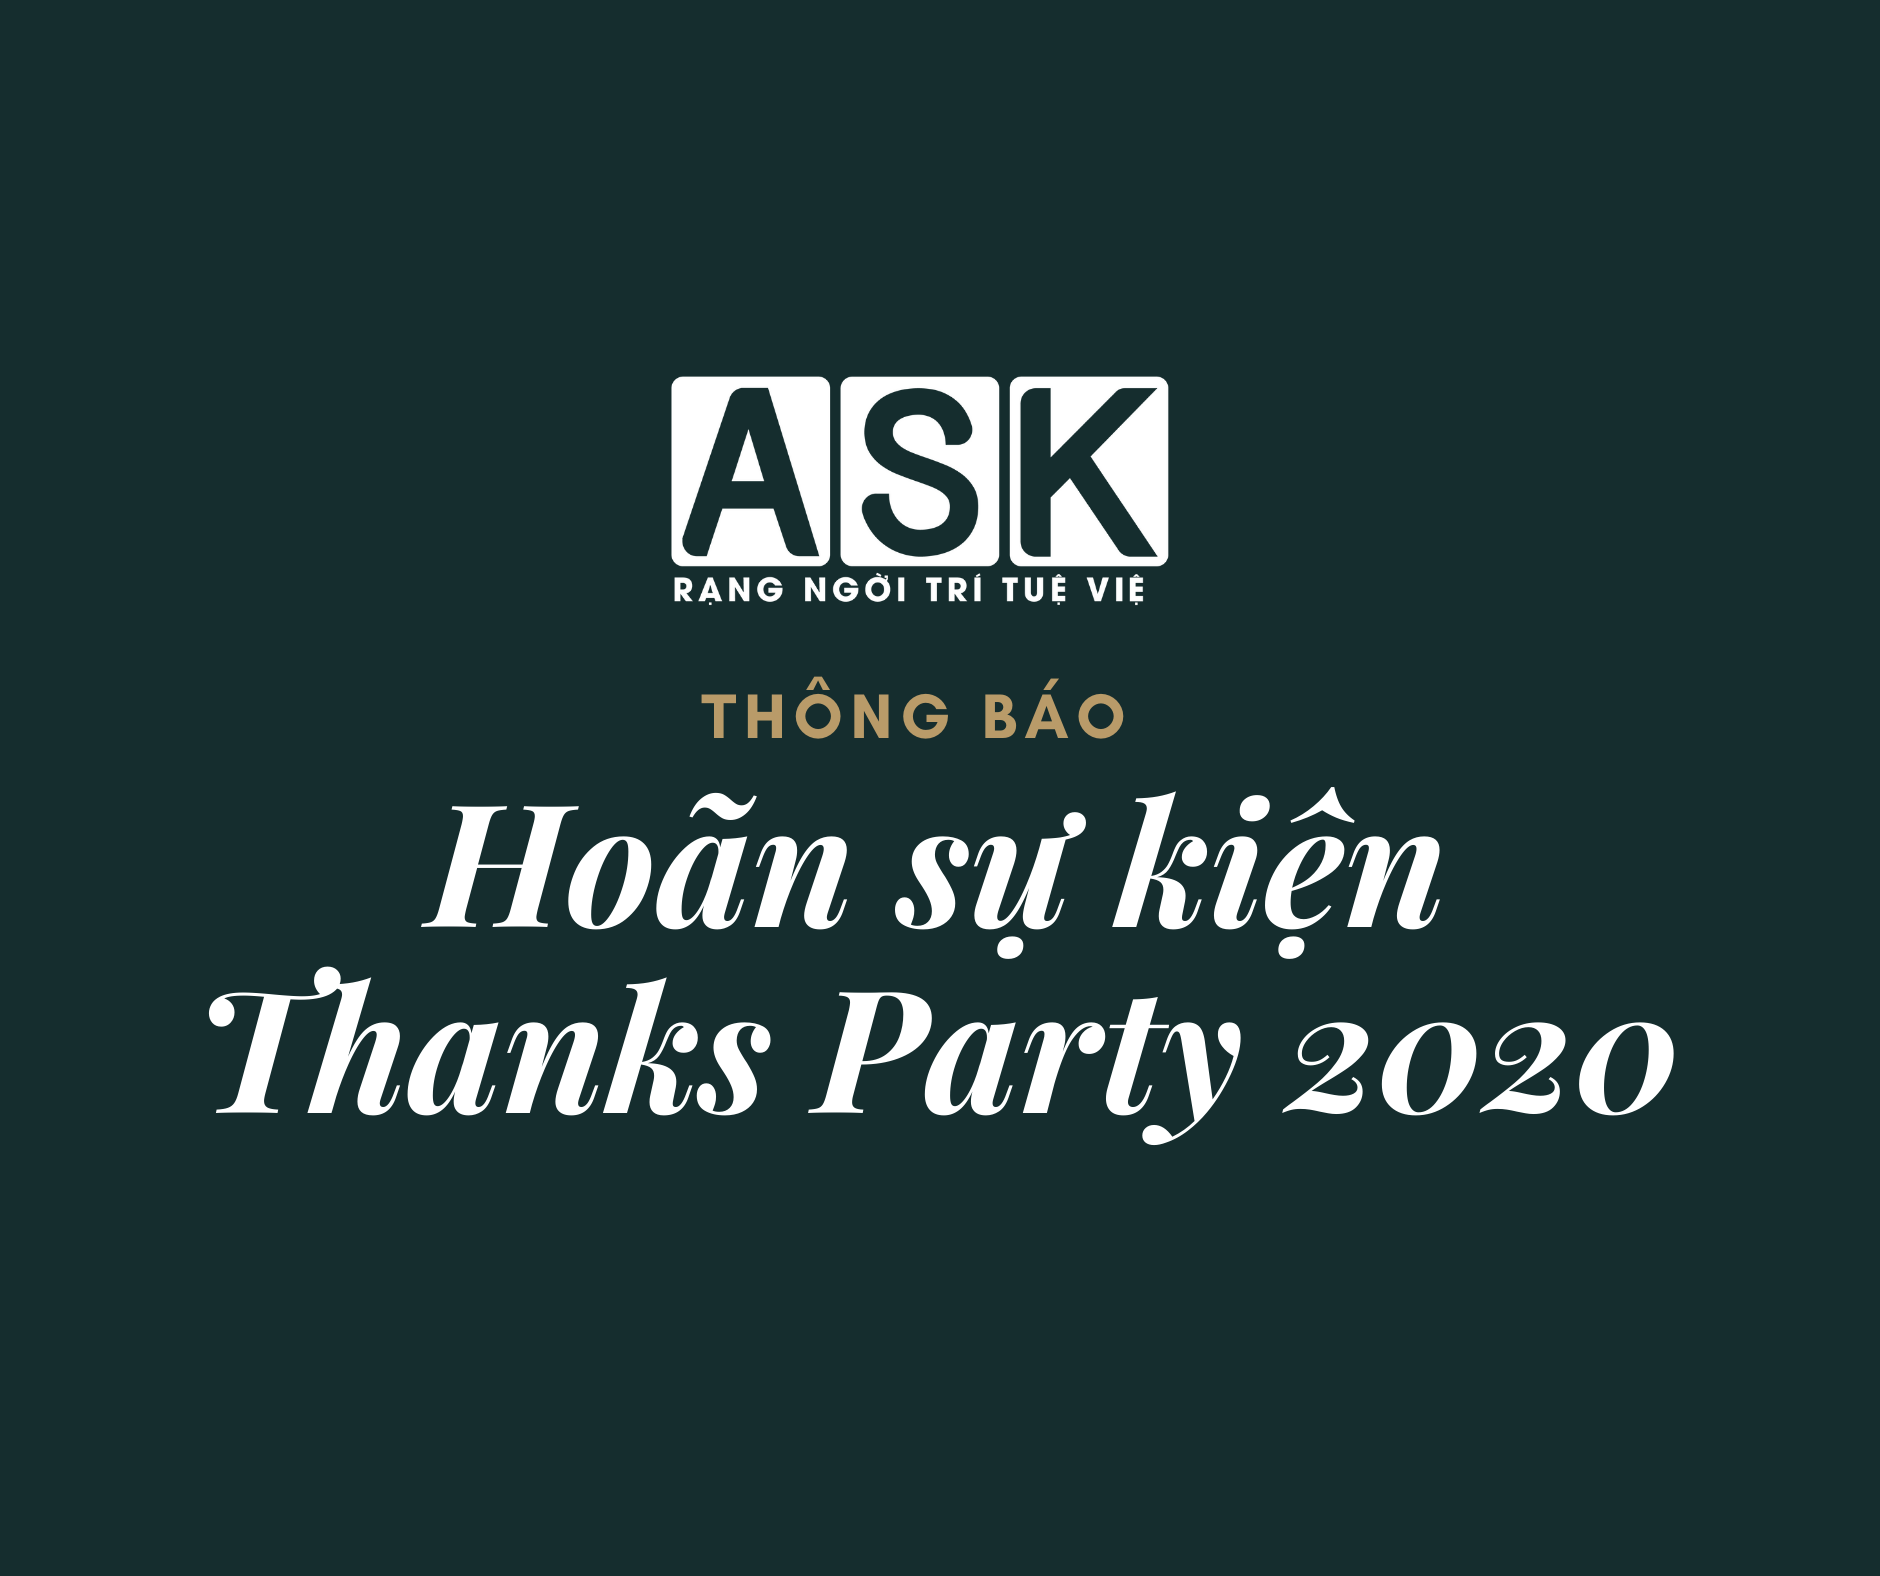 [THÔNG BÁO] HOÃN SỰ KIỆN THANKS PARTY 2020